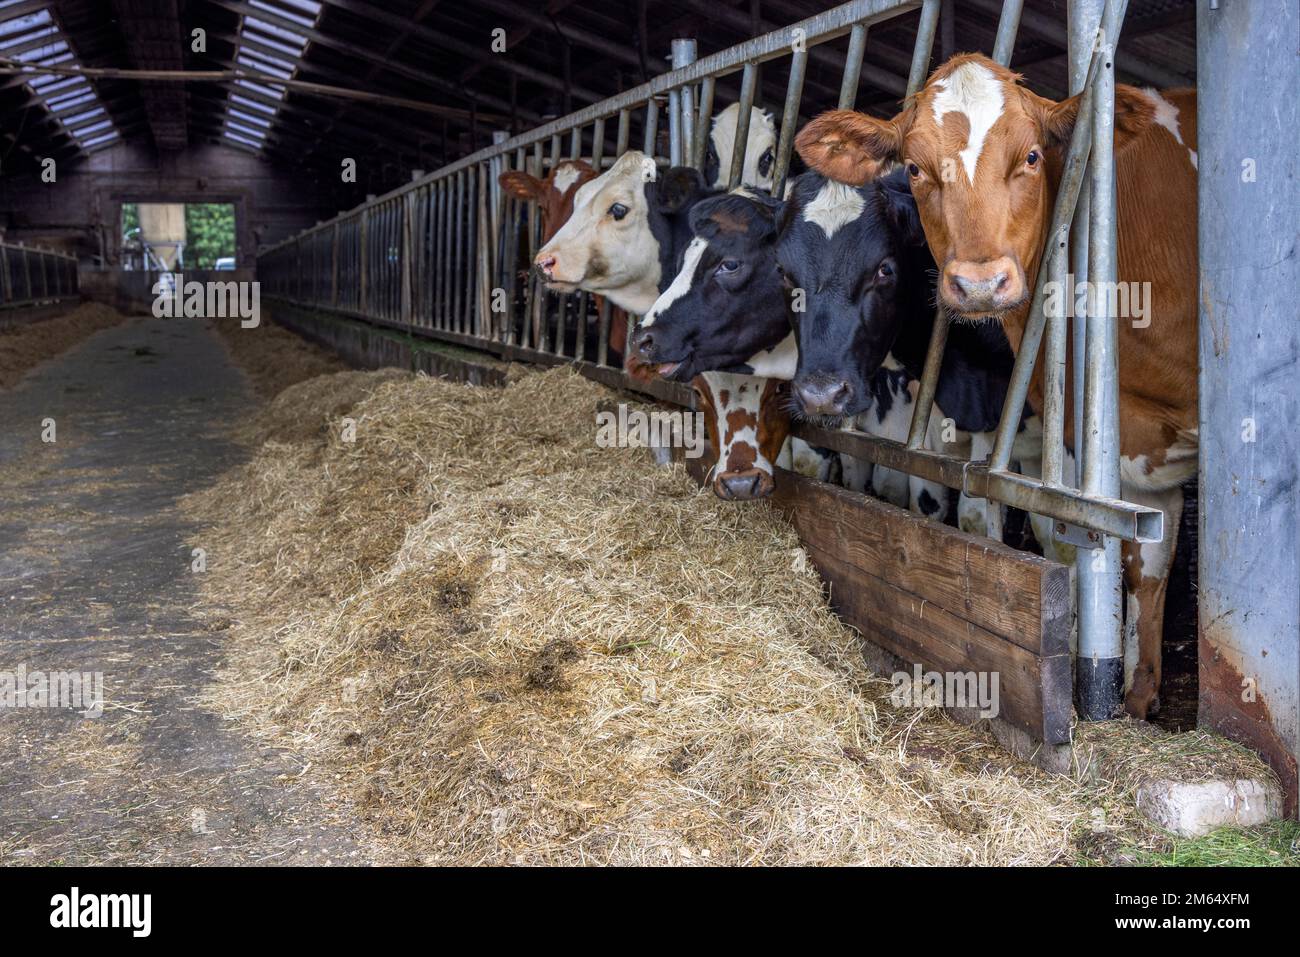 Une jeune vache se dirige dans une grange en rangée au moment de l'alimentation, piquant à travers les barres d'une porte dans une génisse stable, mangeant du foin, de la paille du côté droit dans l'écurie Banque D'Images